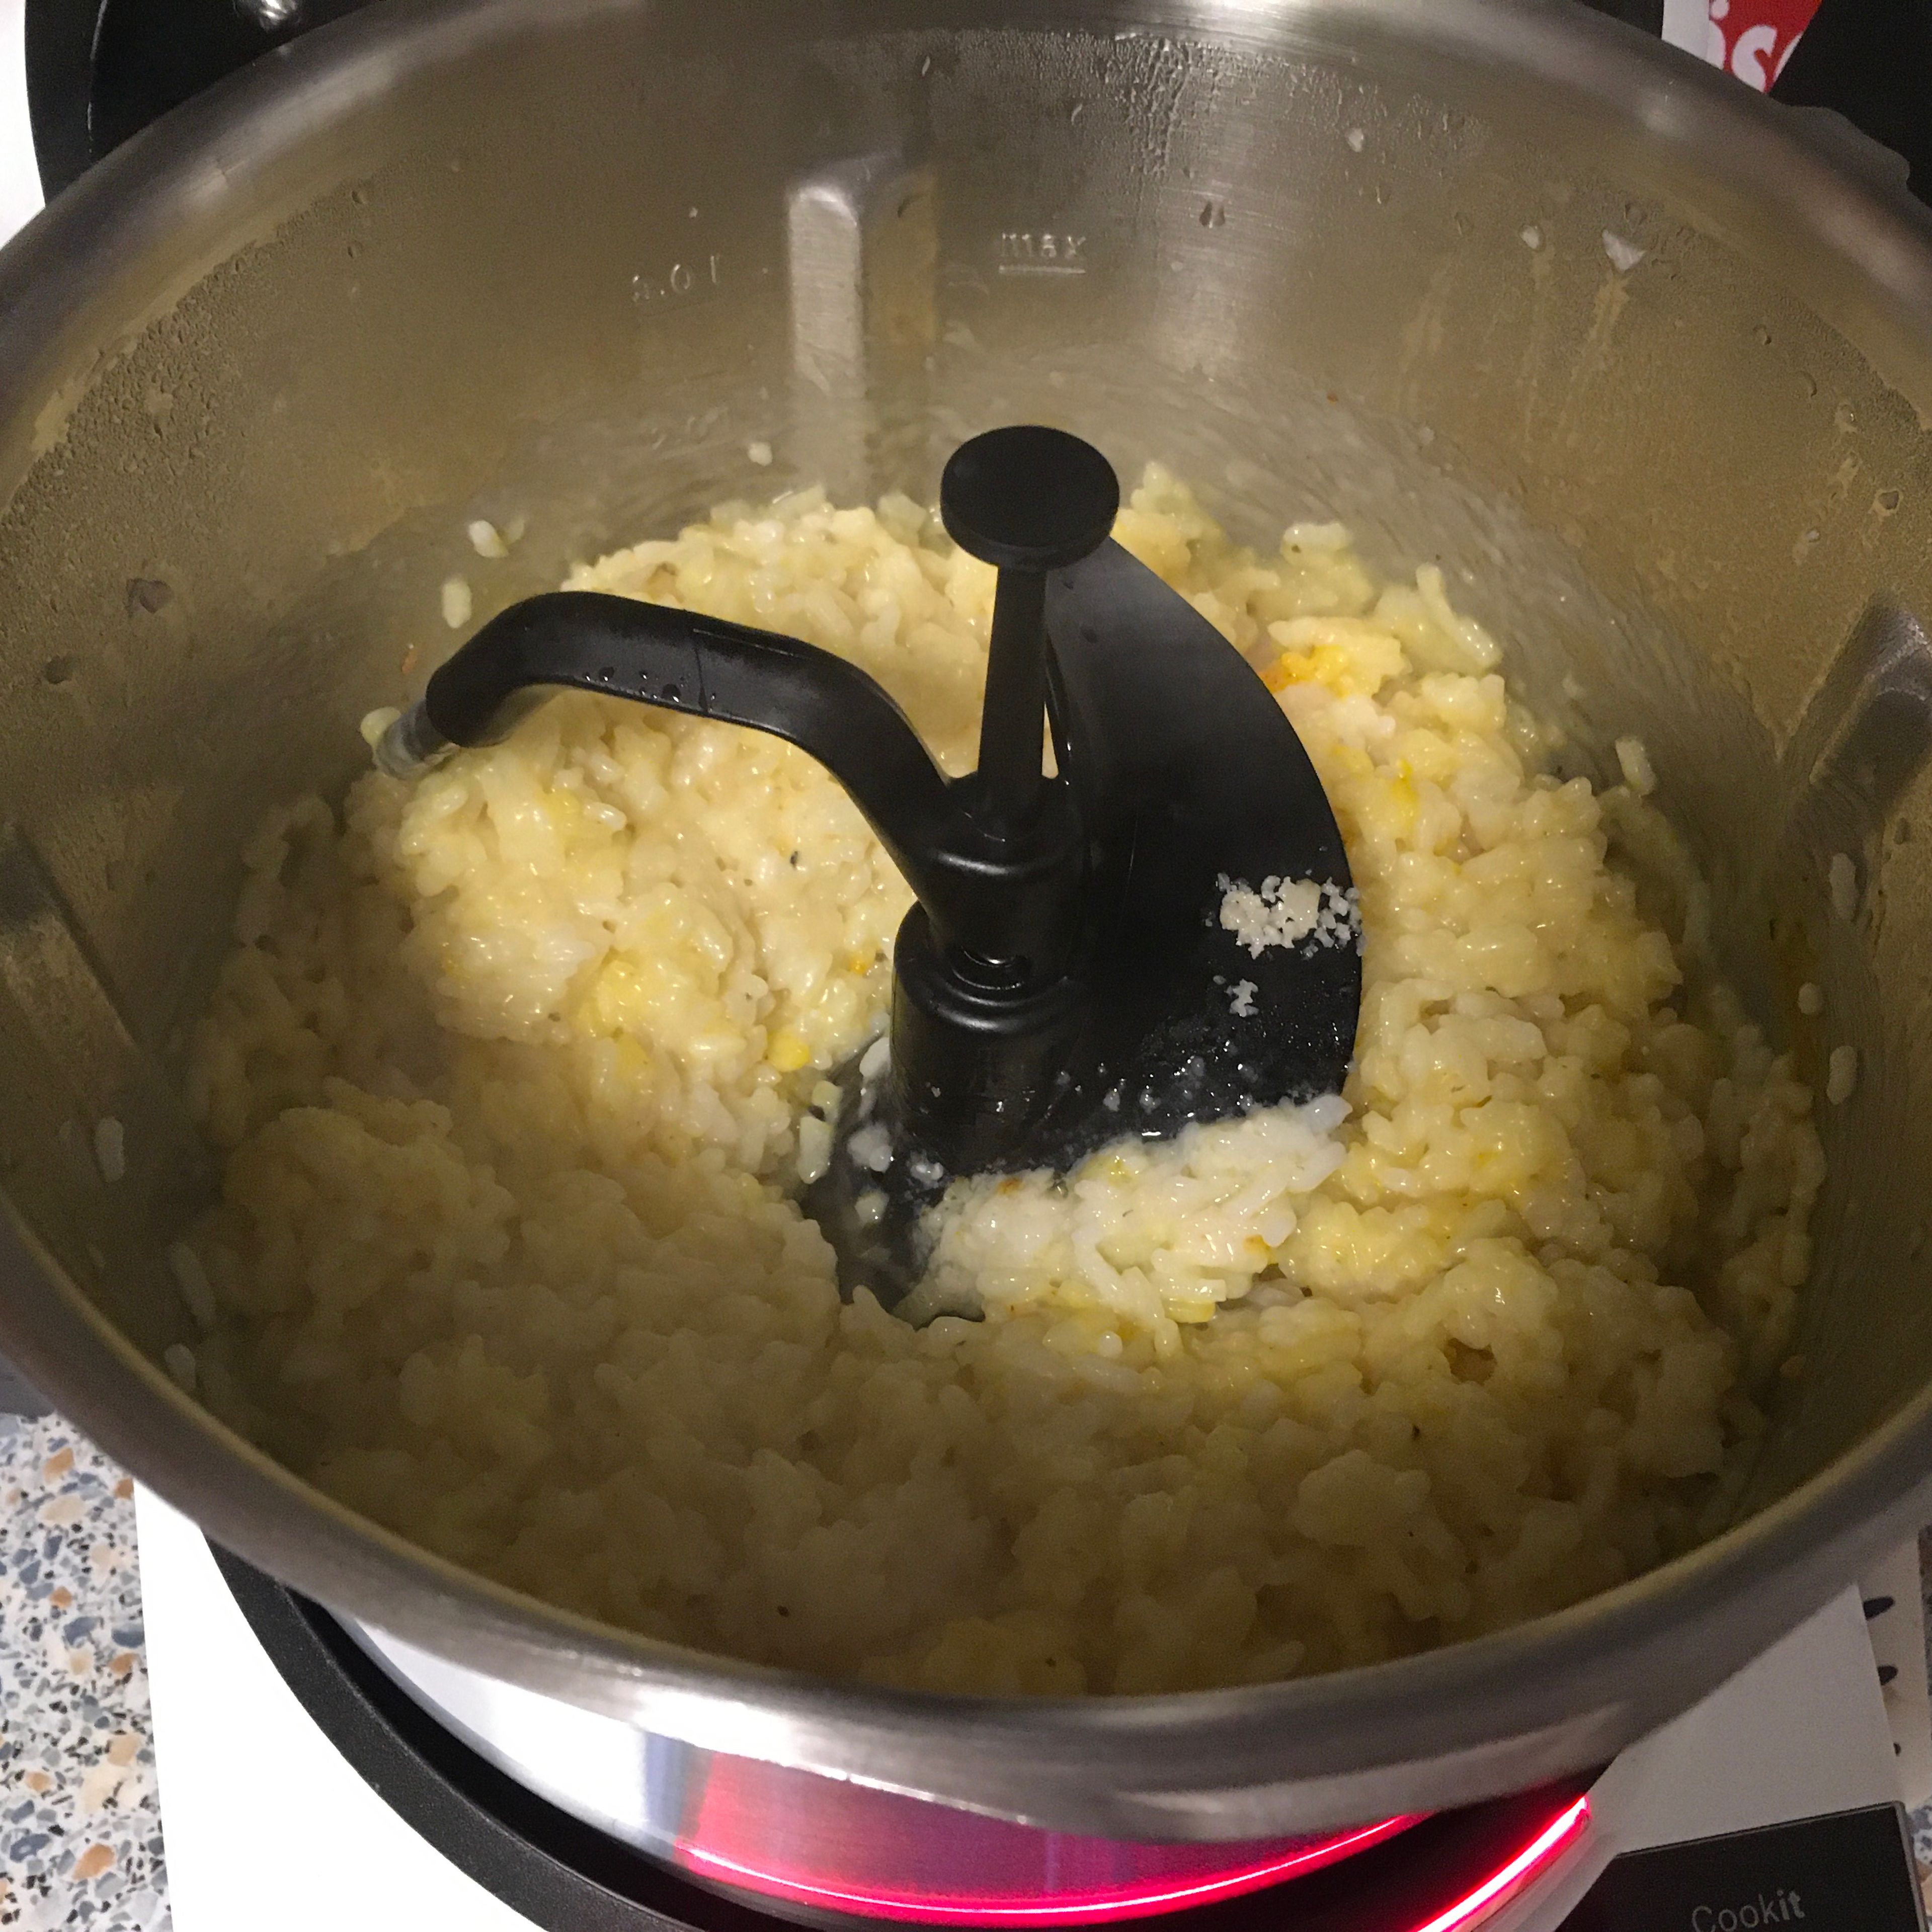 Butter und Parmesan zugeben und unterrühren - sofort servieren und schmecken lassen. (Cookit 3D-Rührer | Stufe 6 | 95 Grad | 30 Sek.)